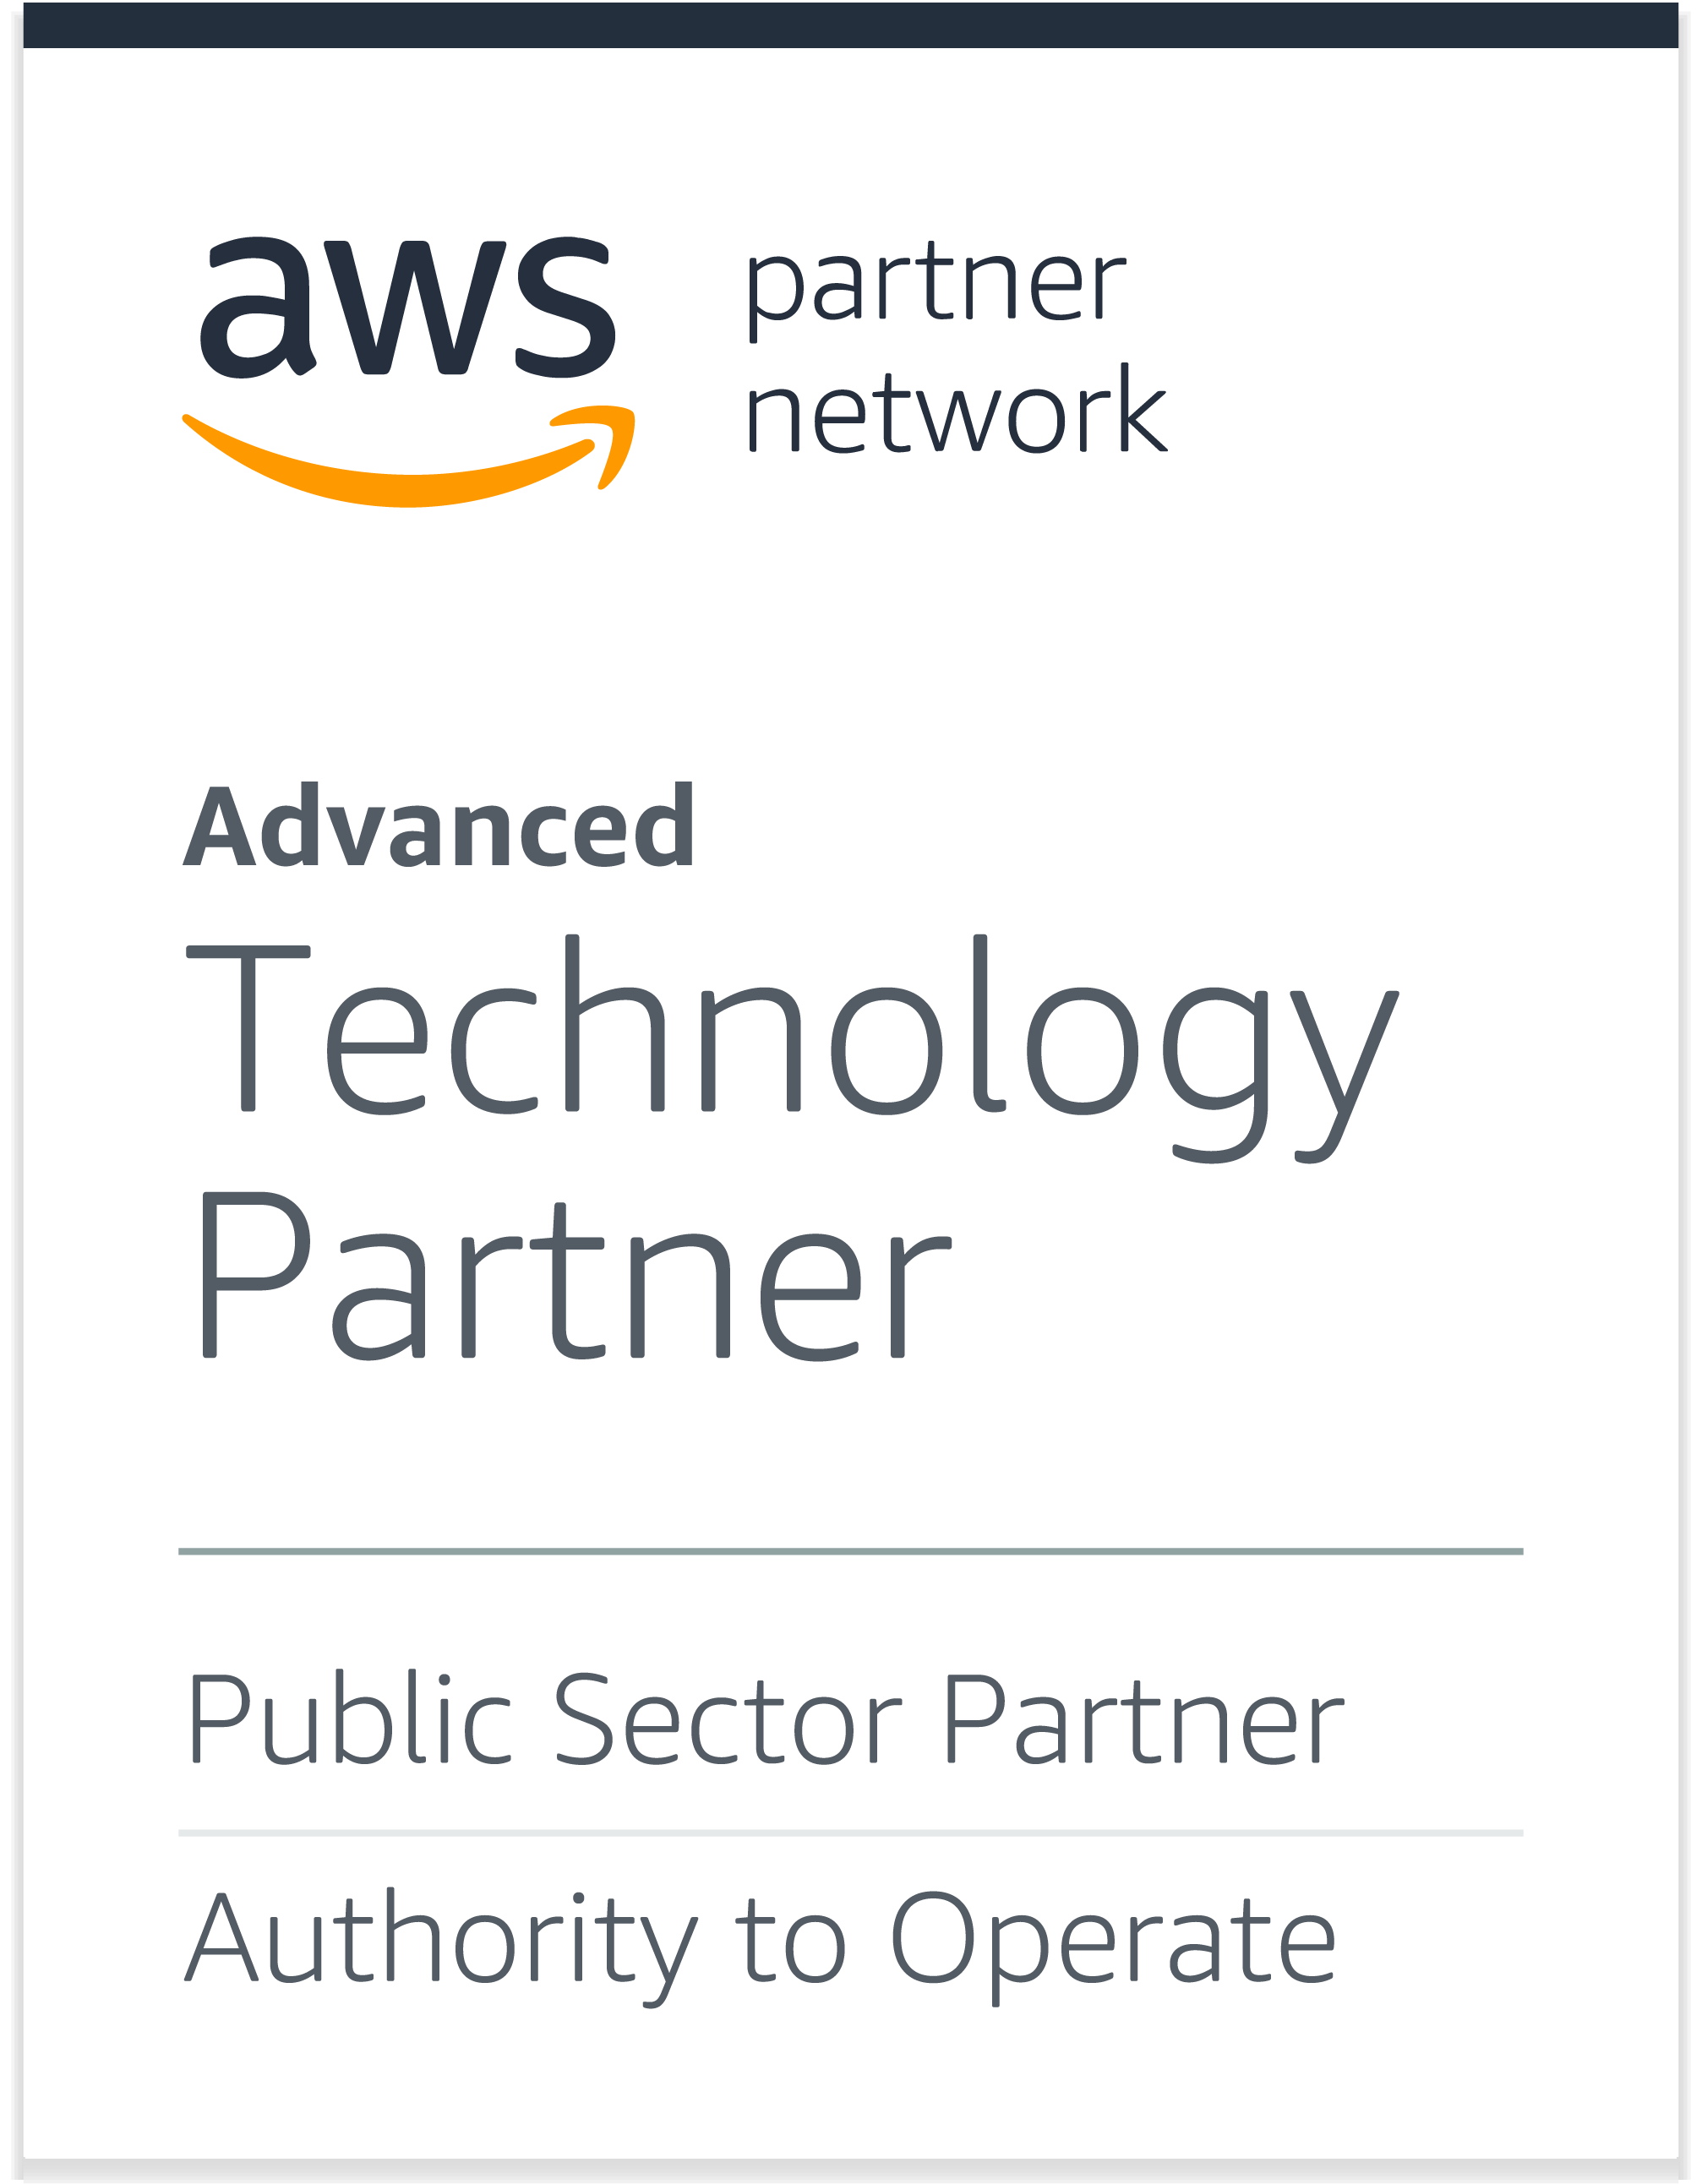 SAINT is an AWS Advanced Technology Partner